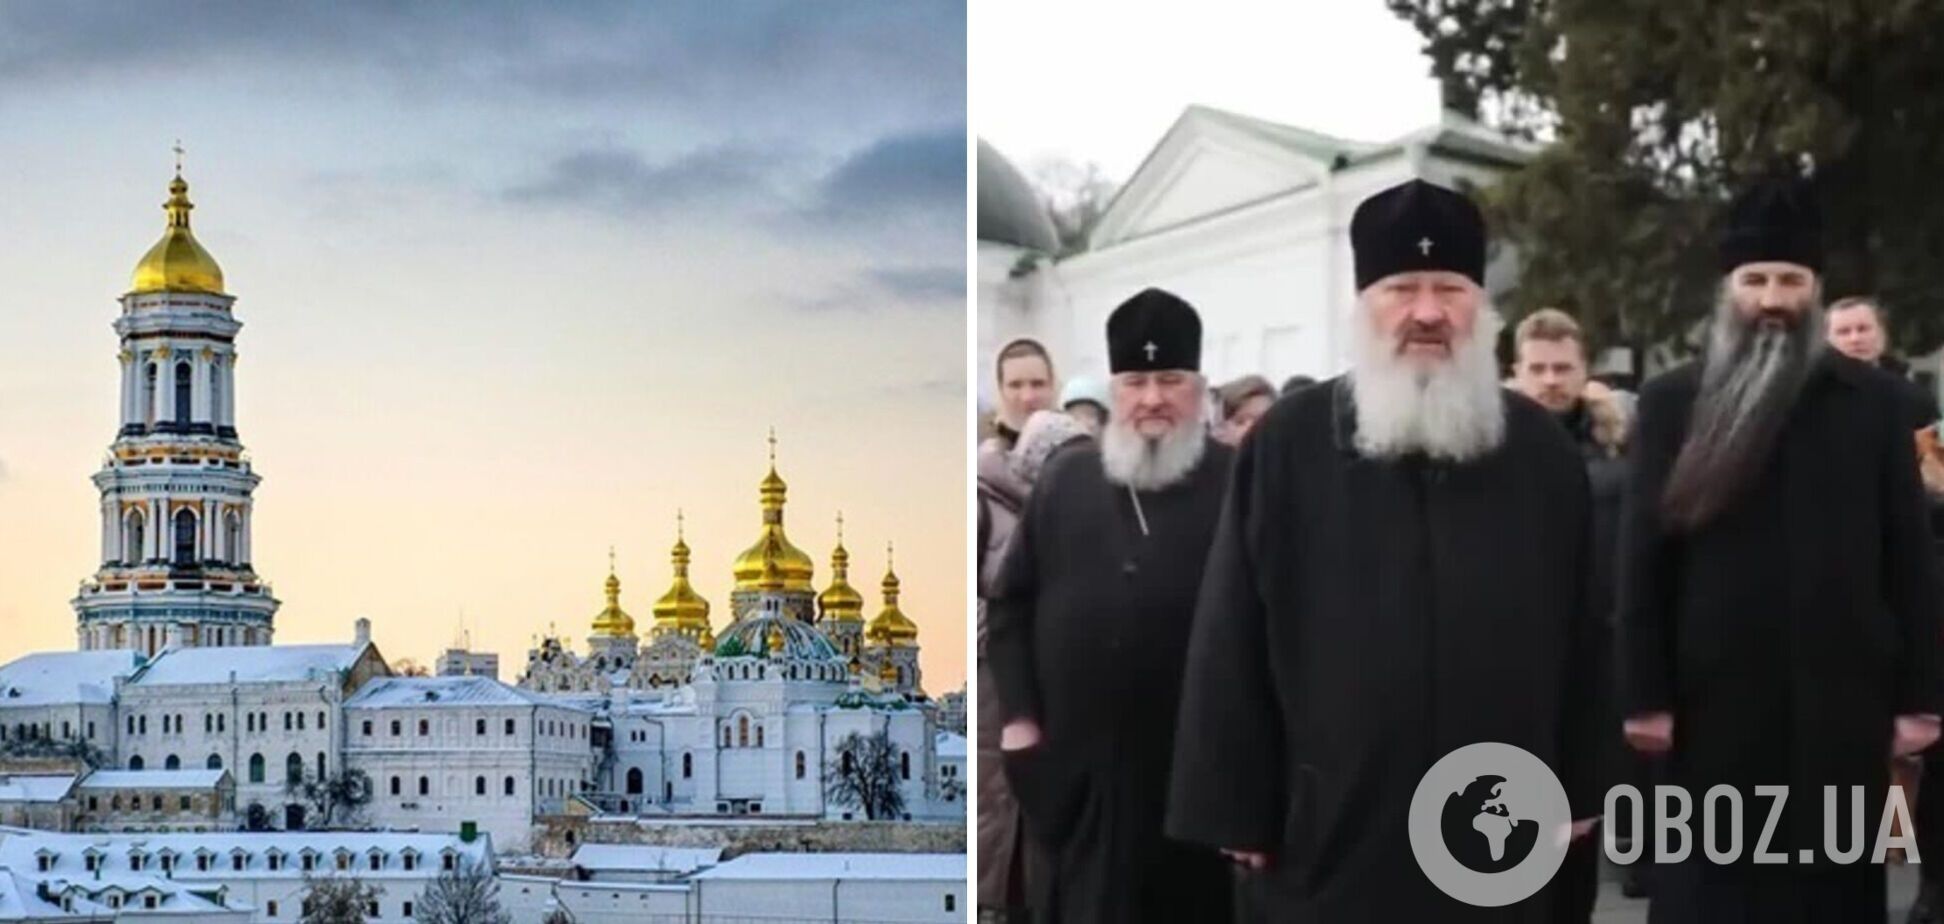 'Мы здесь живем с 1988 года': монахи УПЦ МП заявили, что не будут выселяться из Киево-Печерской лавры. Видео